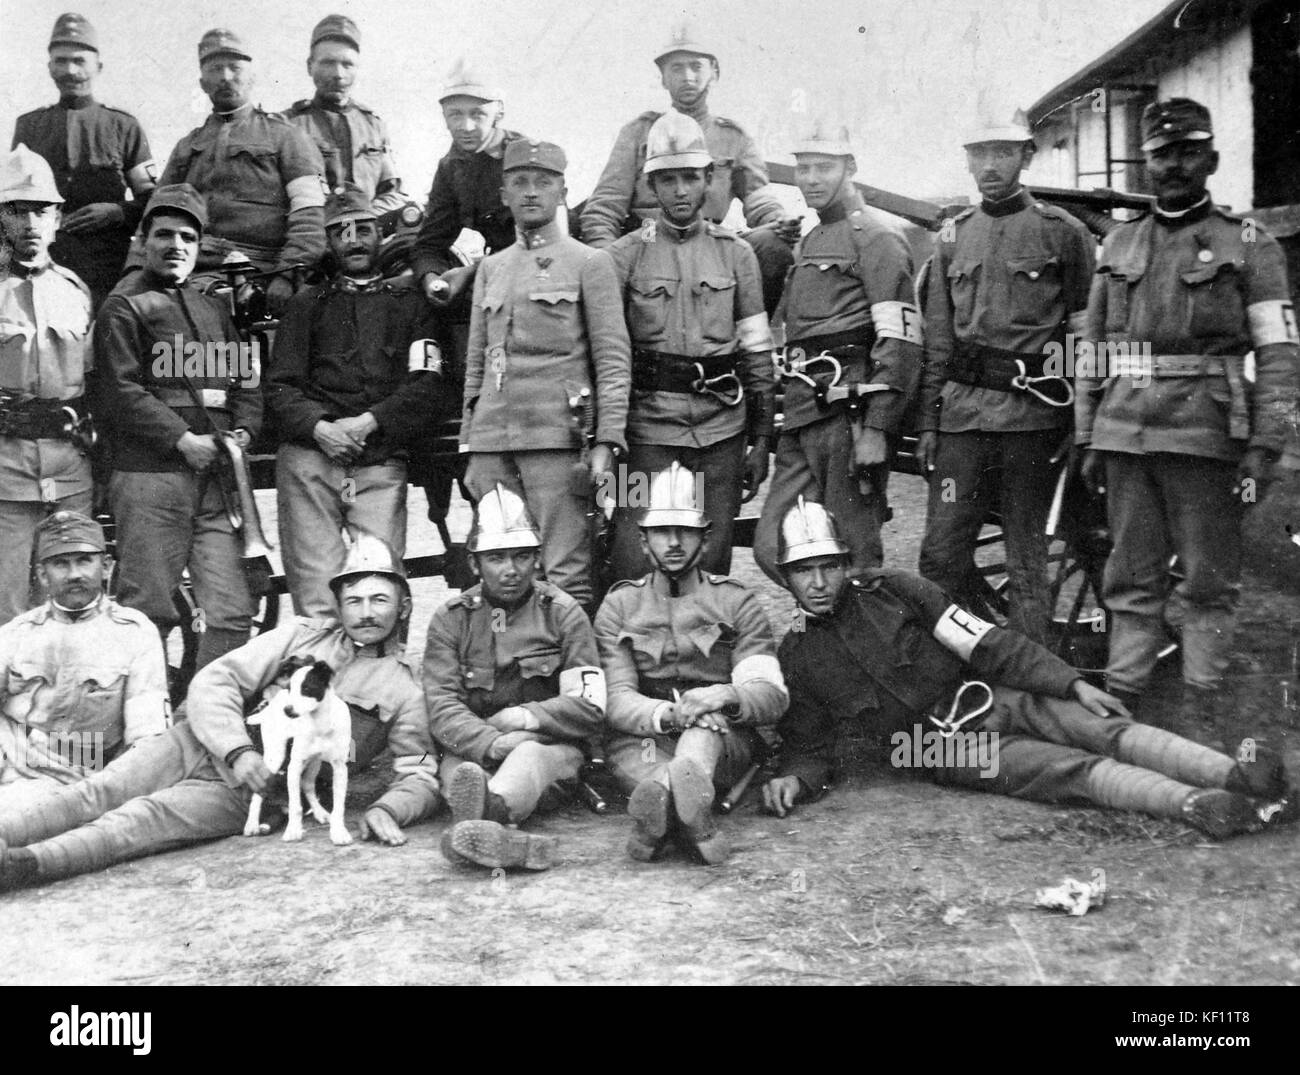 First World War, tableau, dog, men, uniform, armband, carabiner, helmet, firefighter  4690 Stock Photo